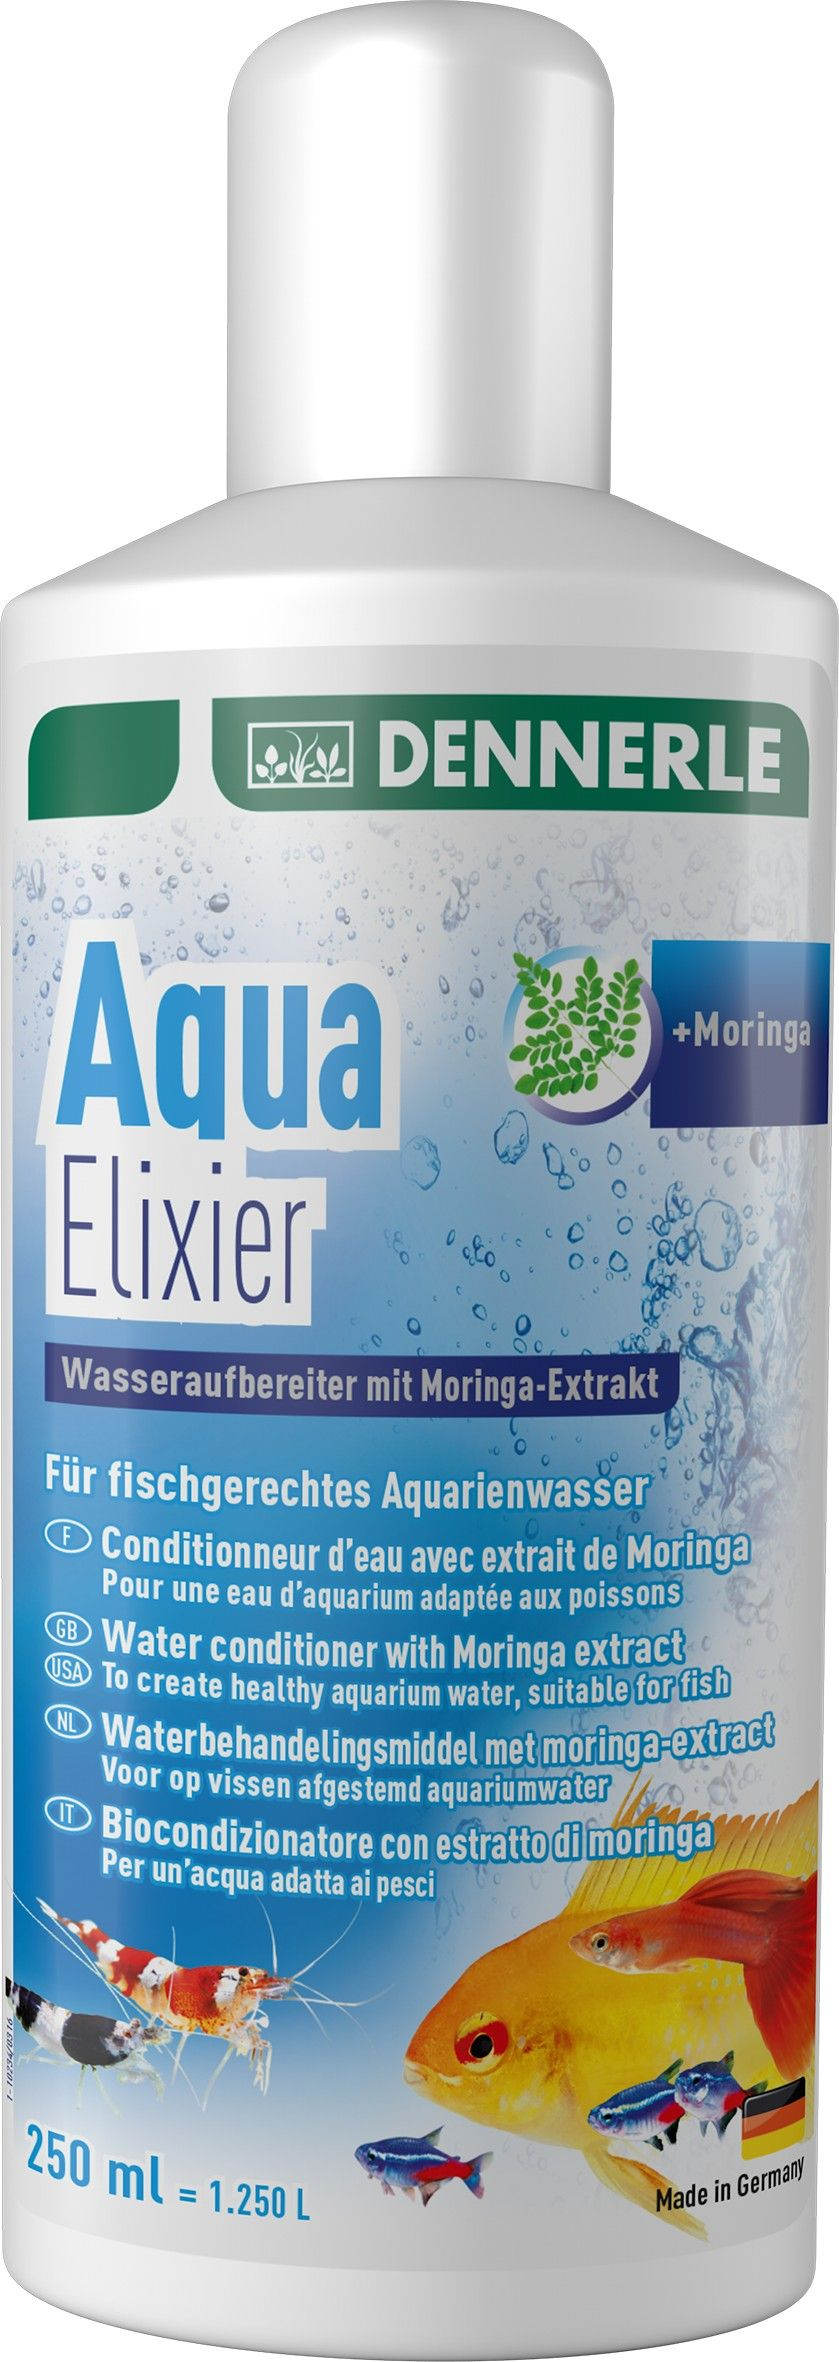 Aqua Elixier - Кондиционер для подготовки аквариумной воды, Dennerle